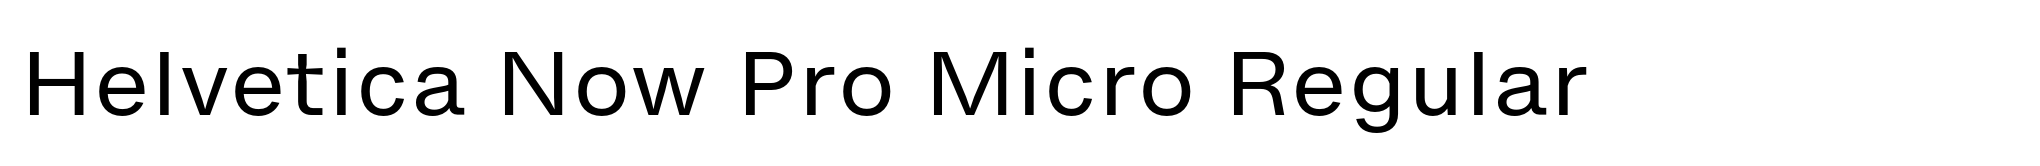 Helvetica Now Pro Micro Regular image